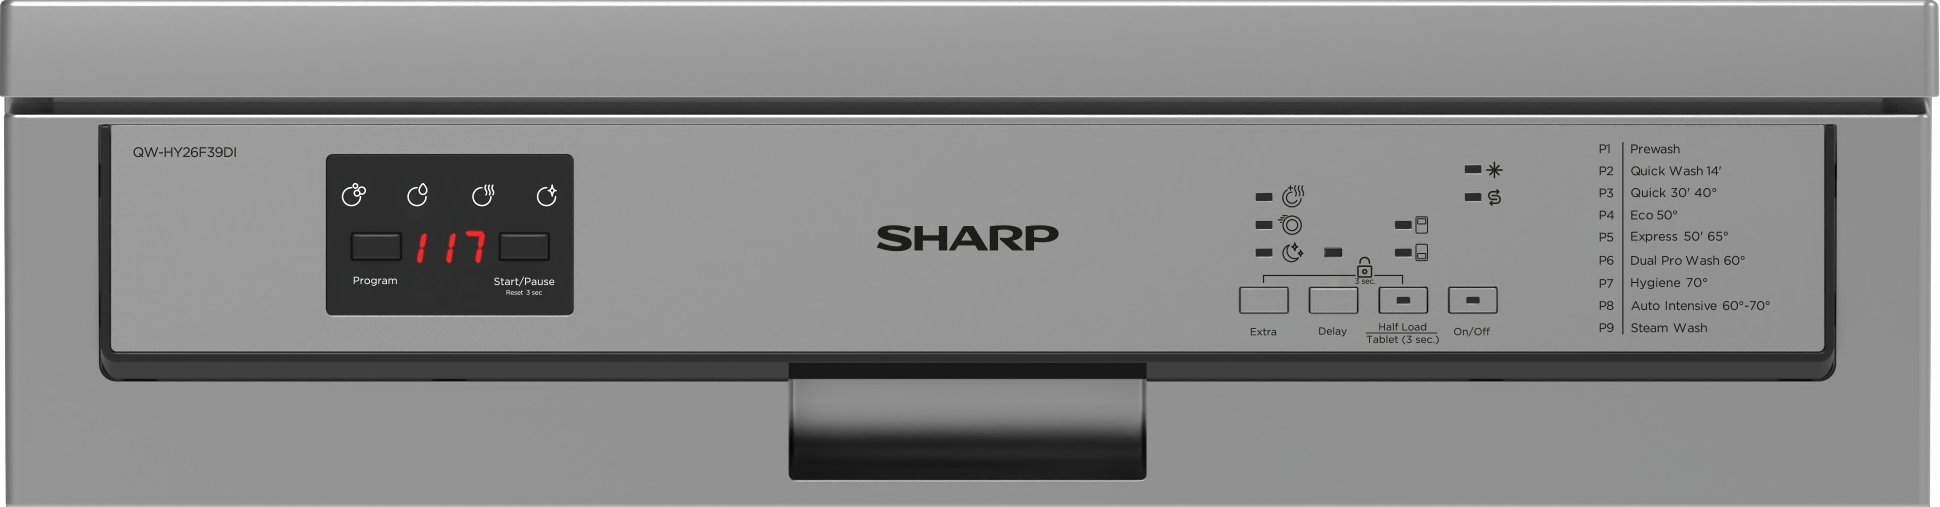 Myčka Sharp QW HY26F39DW-DE nabízí hned 9 mycích programů, které změníte pomocí vestavěného LED panelu ve vrchní části spotřebiče.